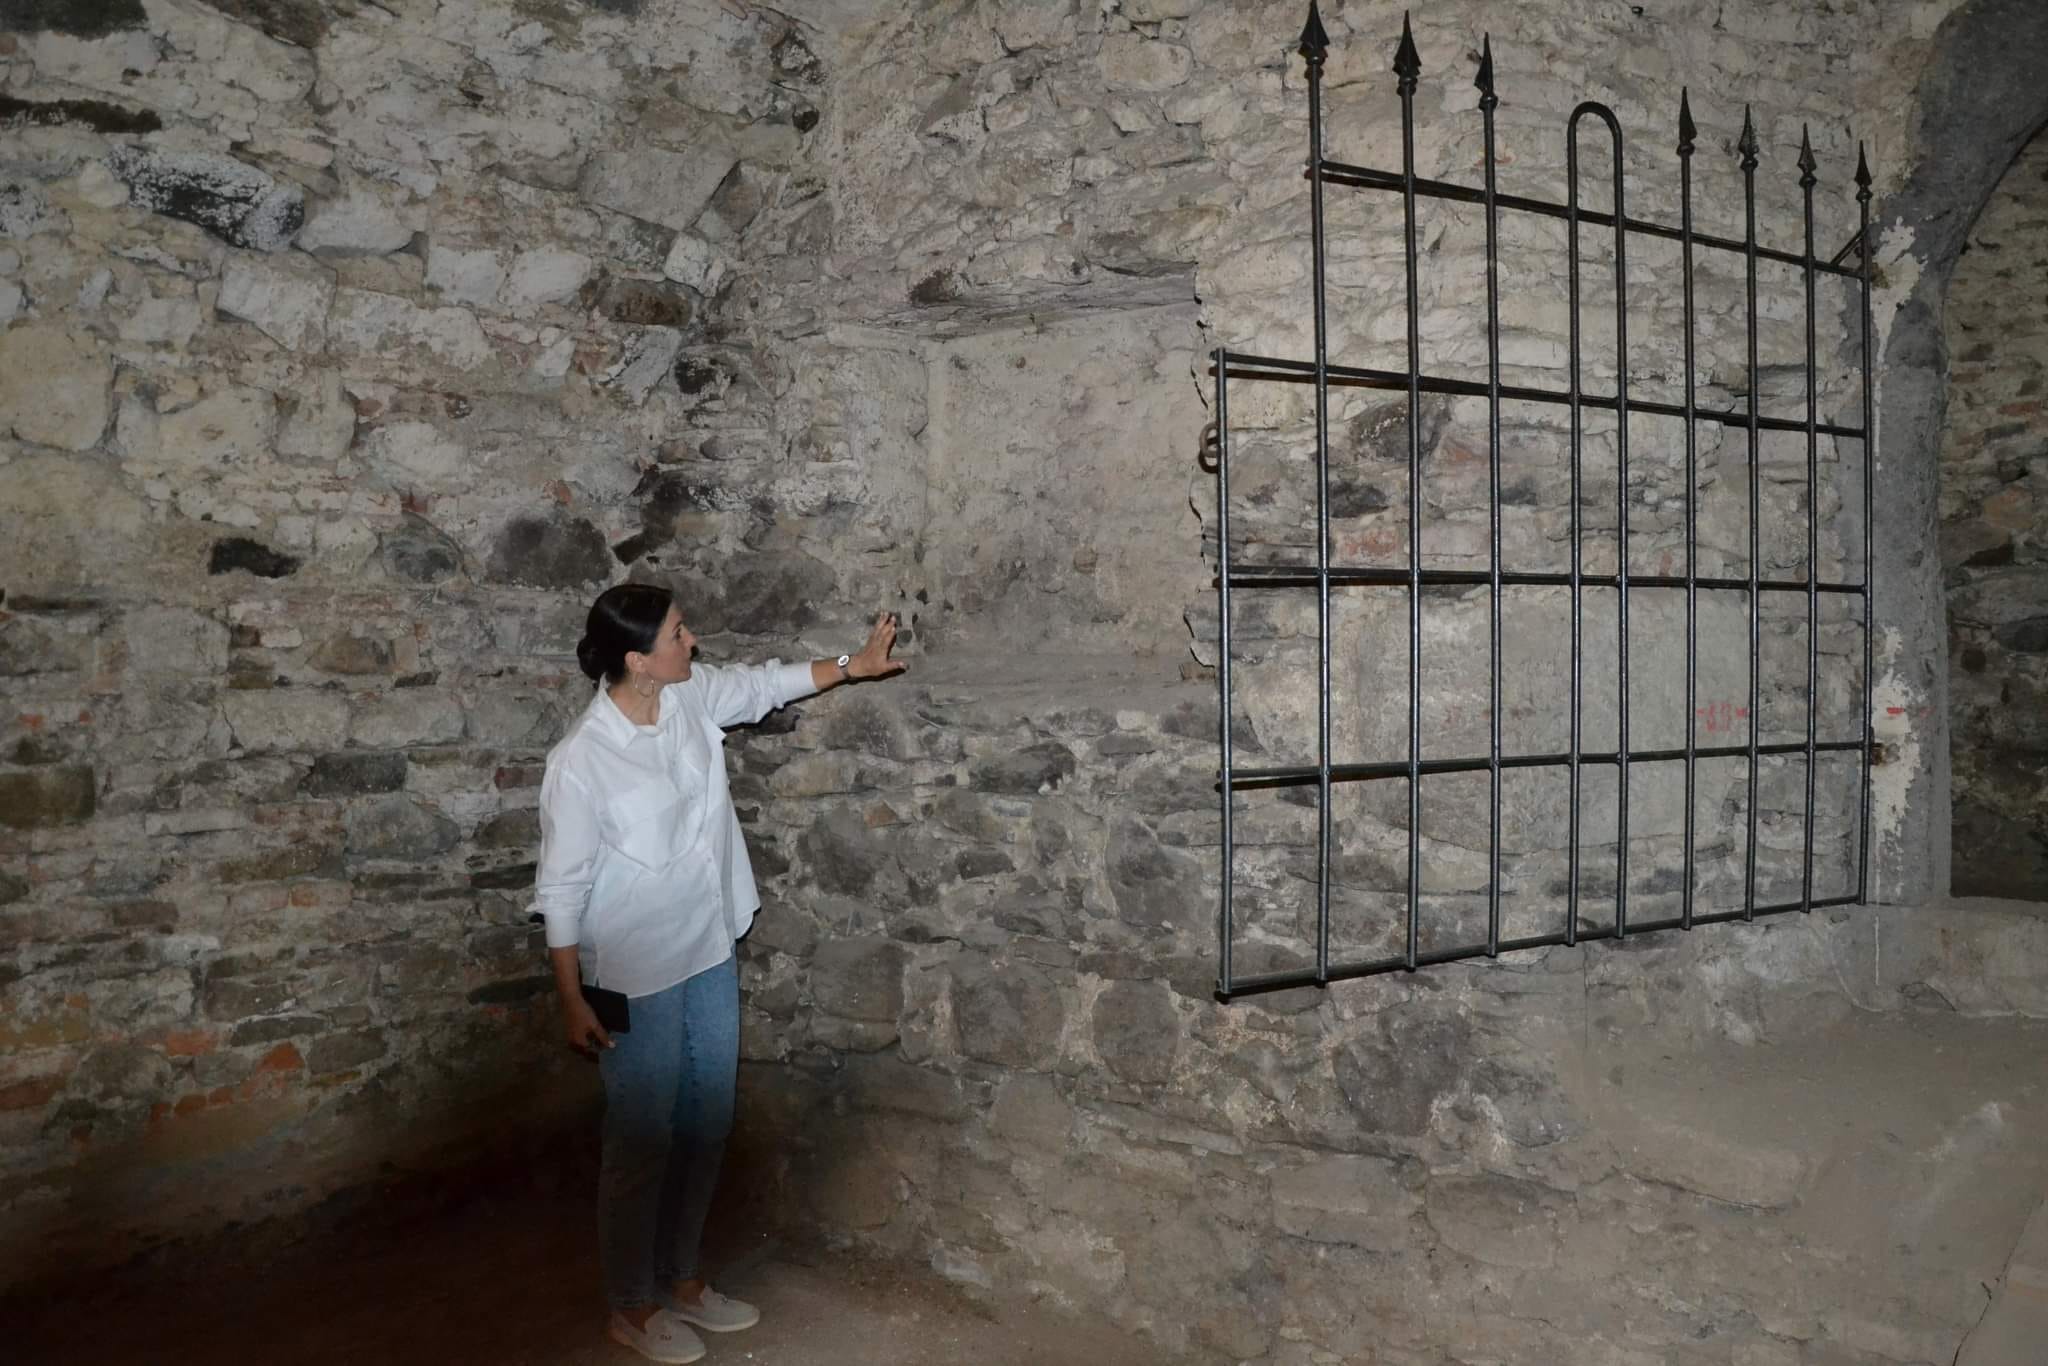 Ужгородський замок незабаром відкриє для відвідувачів нові локації, зокрема підземелля